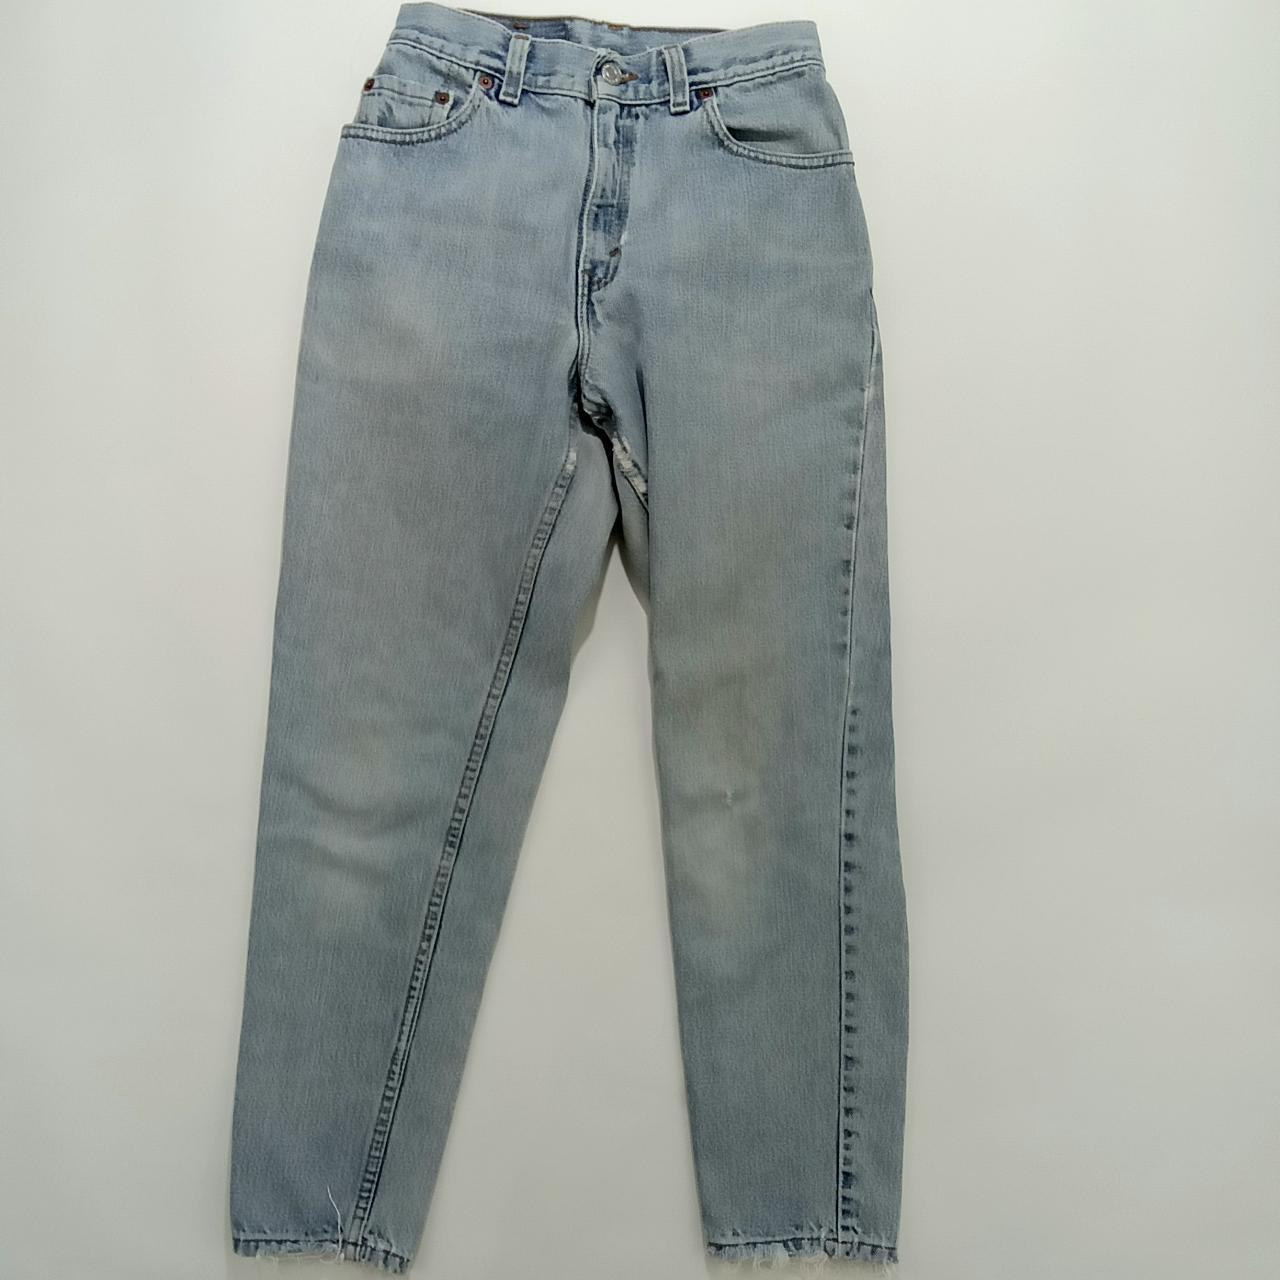 Vintage Levi's 550 Jeans Women's 4 Pet Light Wash... - Depop